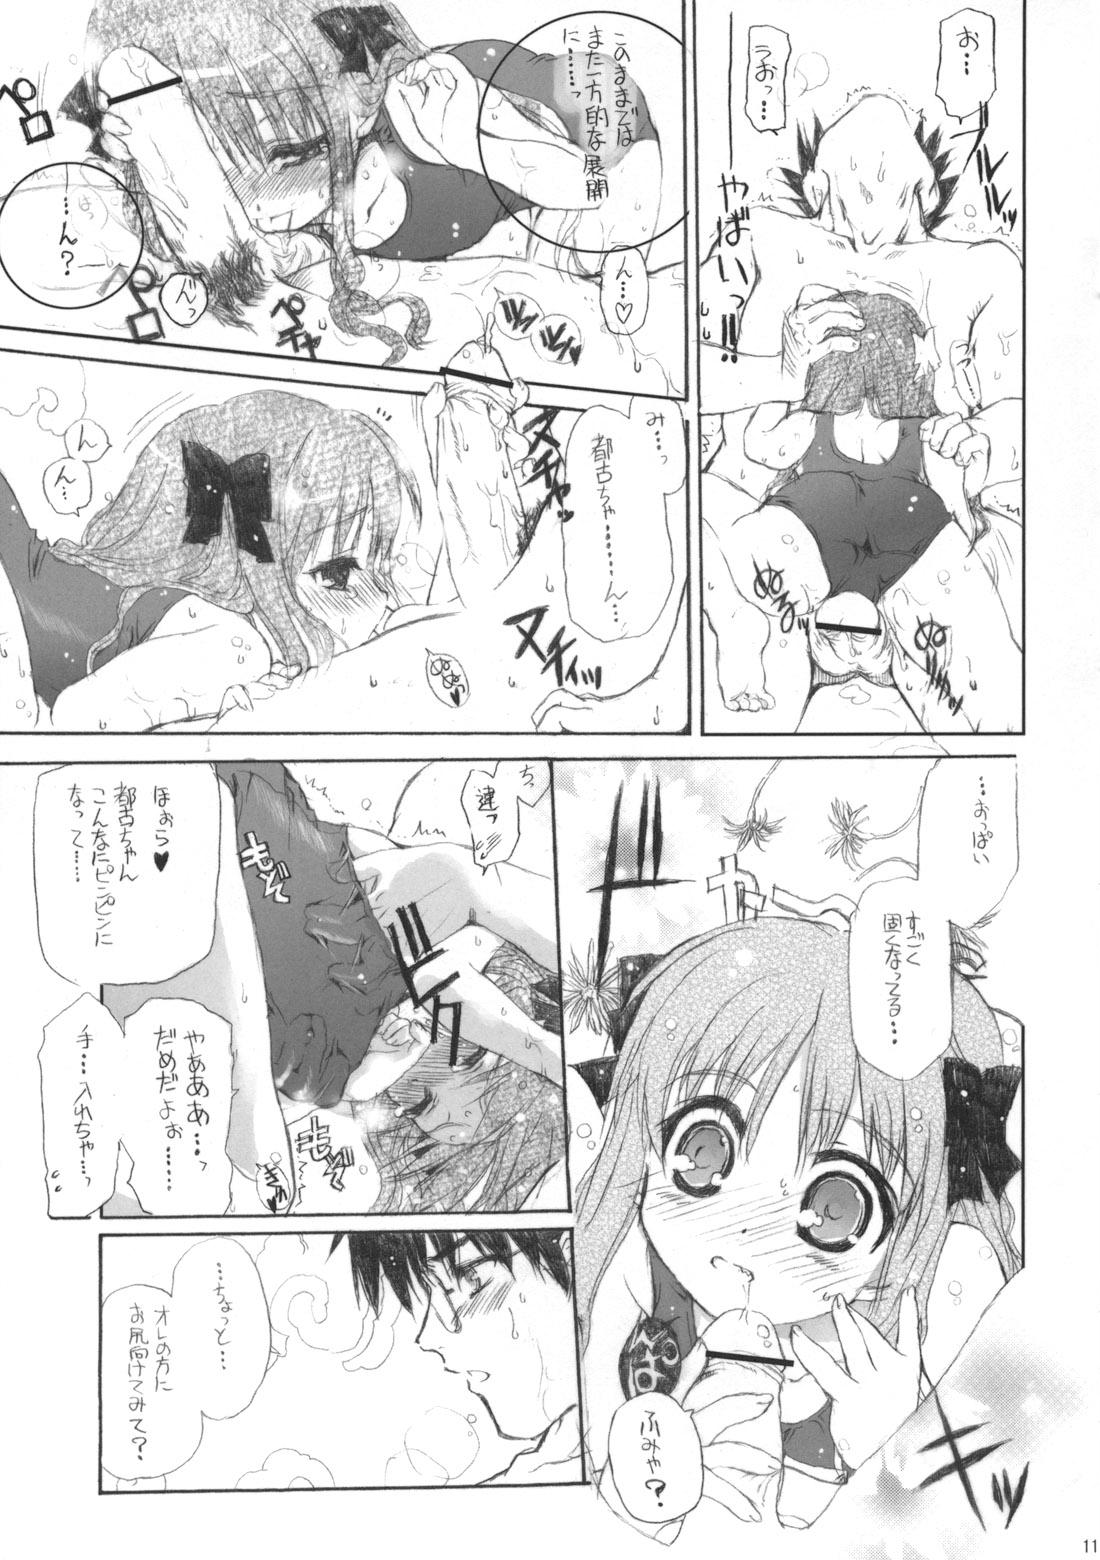 Stripping Neko-bus Tei no Hon vol.5 - Tsukihime Ejaculations - Page 11